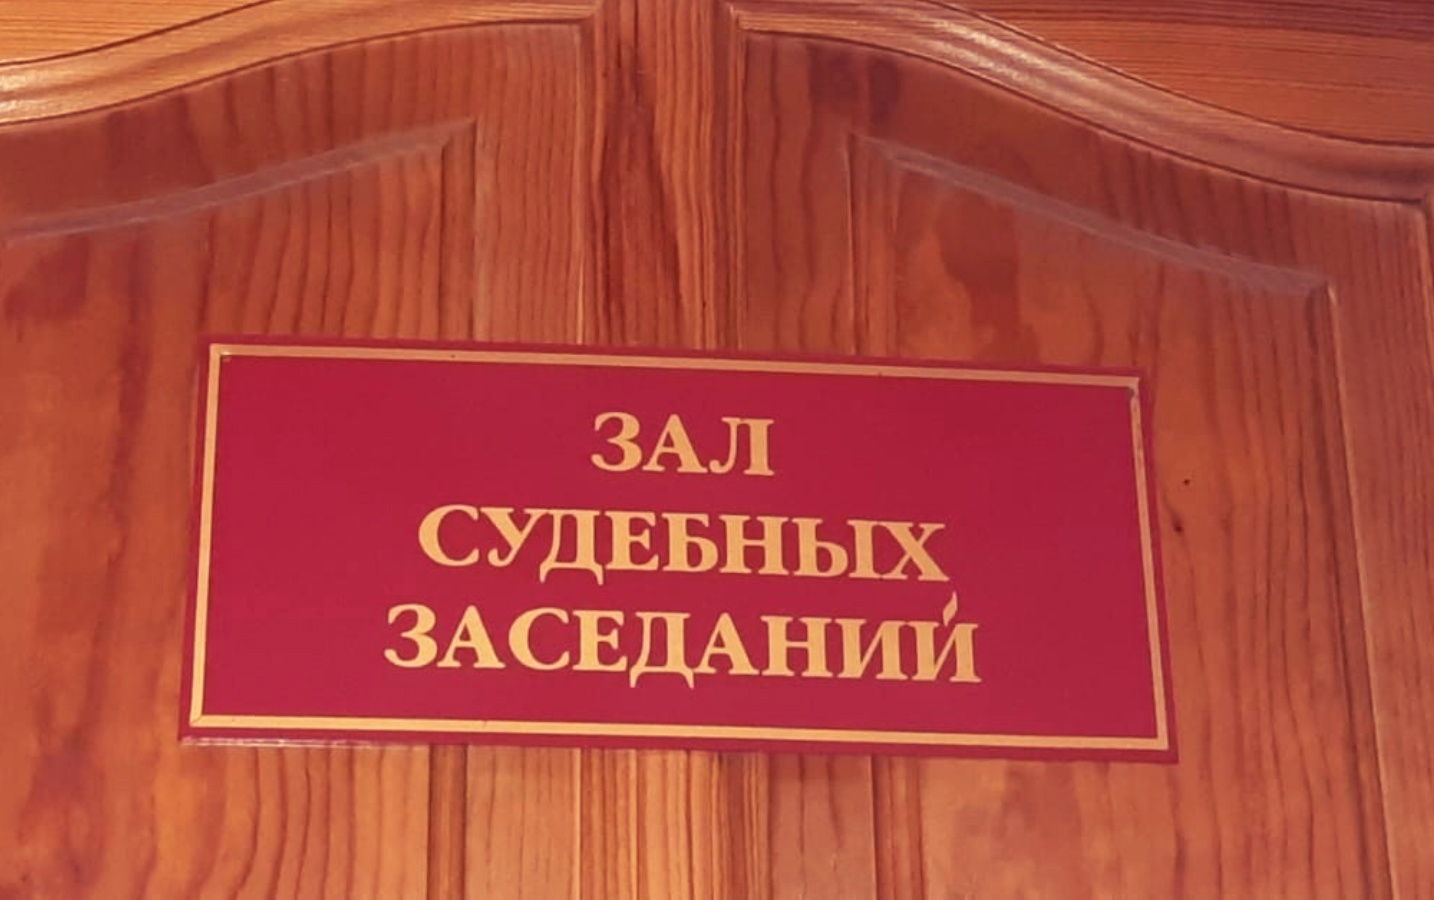 В Моршанске вынесли приговор бывшему сотруднику исправительной колонии №5